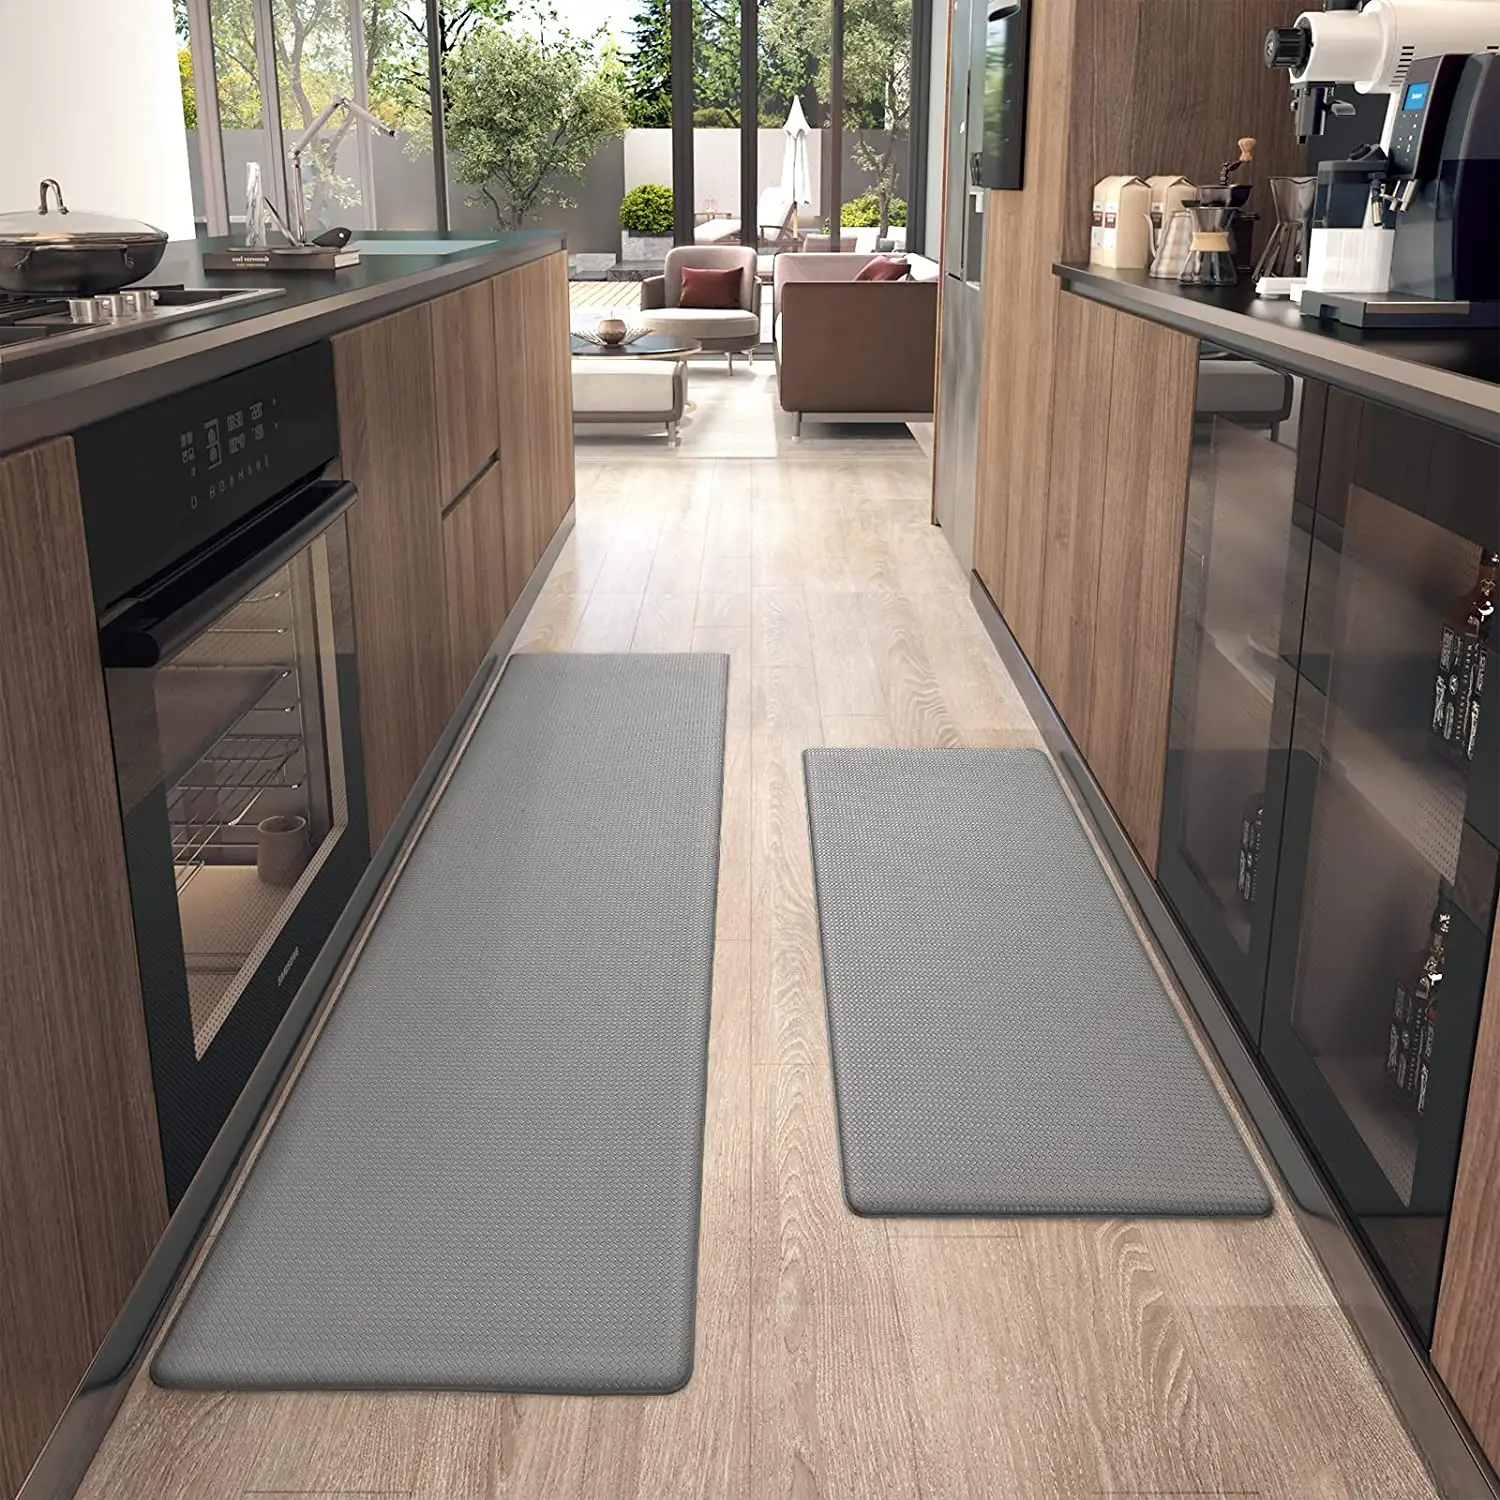 Cushioned Anti Fatigue Kitchen Mat Non Skid Waterproof Comfort Kitchen Rug Set 2 Piece Kitchen Floor Mat